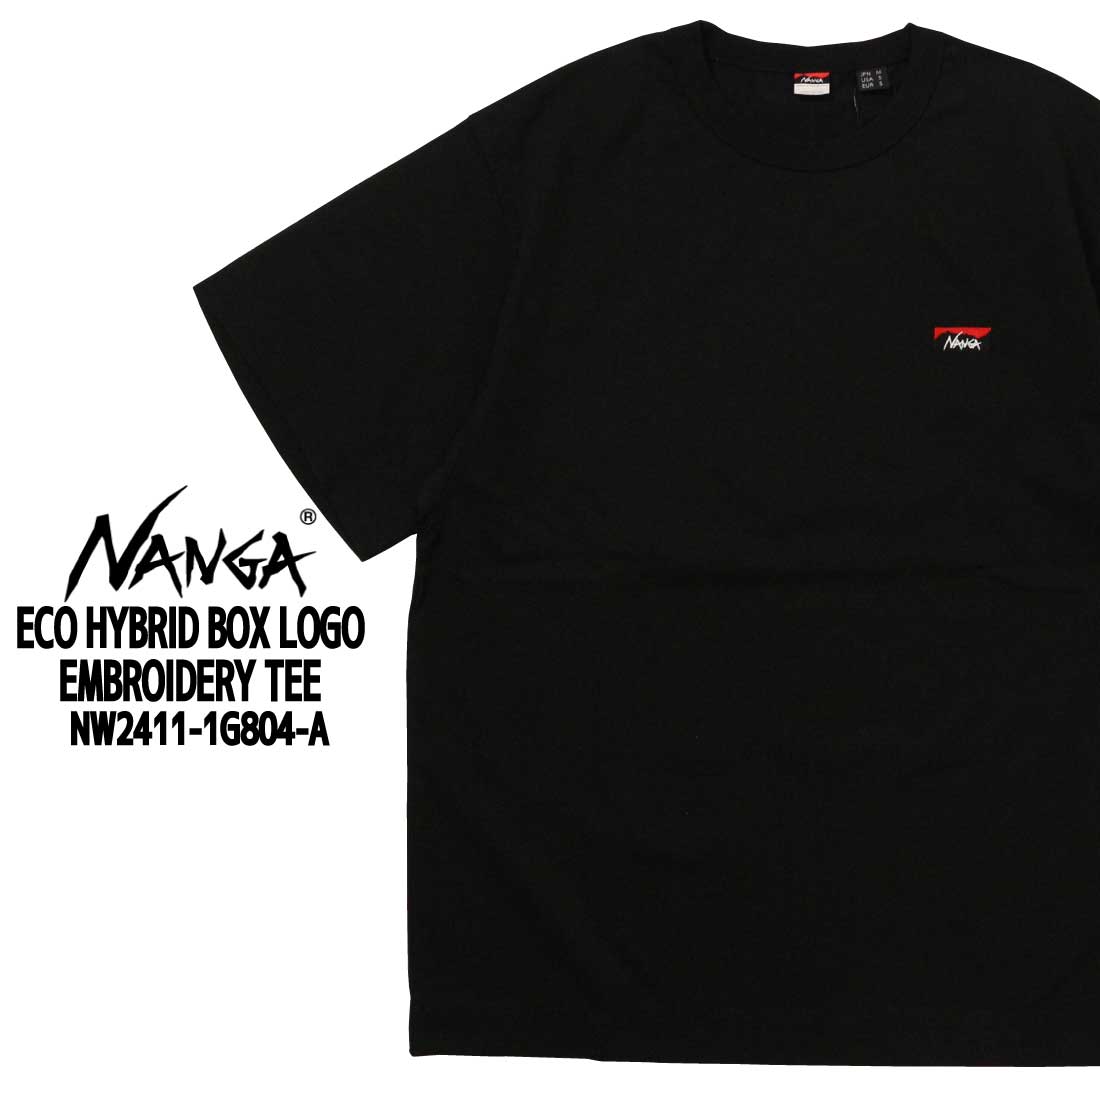 NANGA ナンガ 半袖 Tシャツ NW2411-1g804-A エコ ハイブリッド ボックス ロゴ...